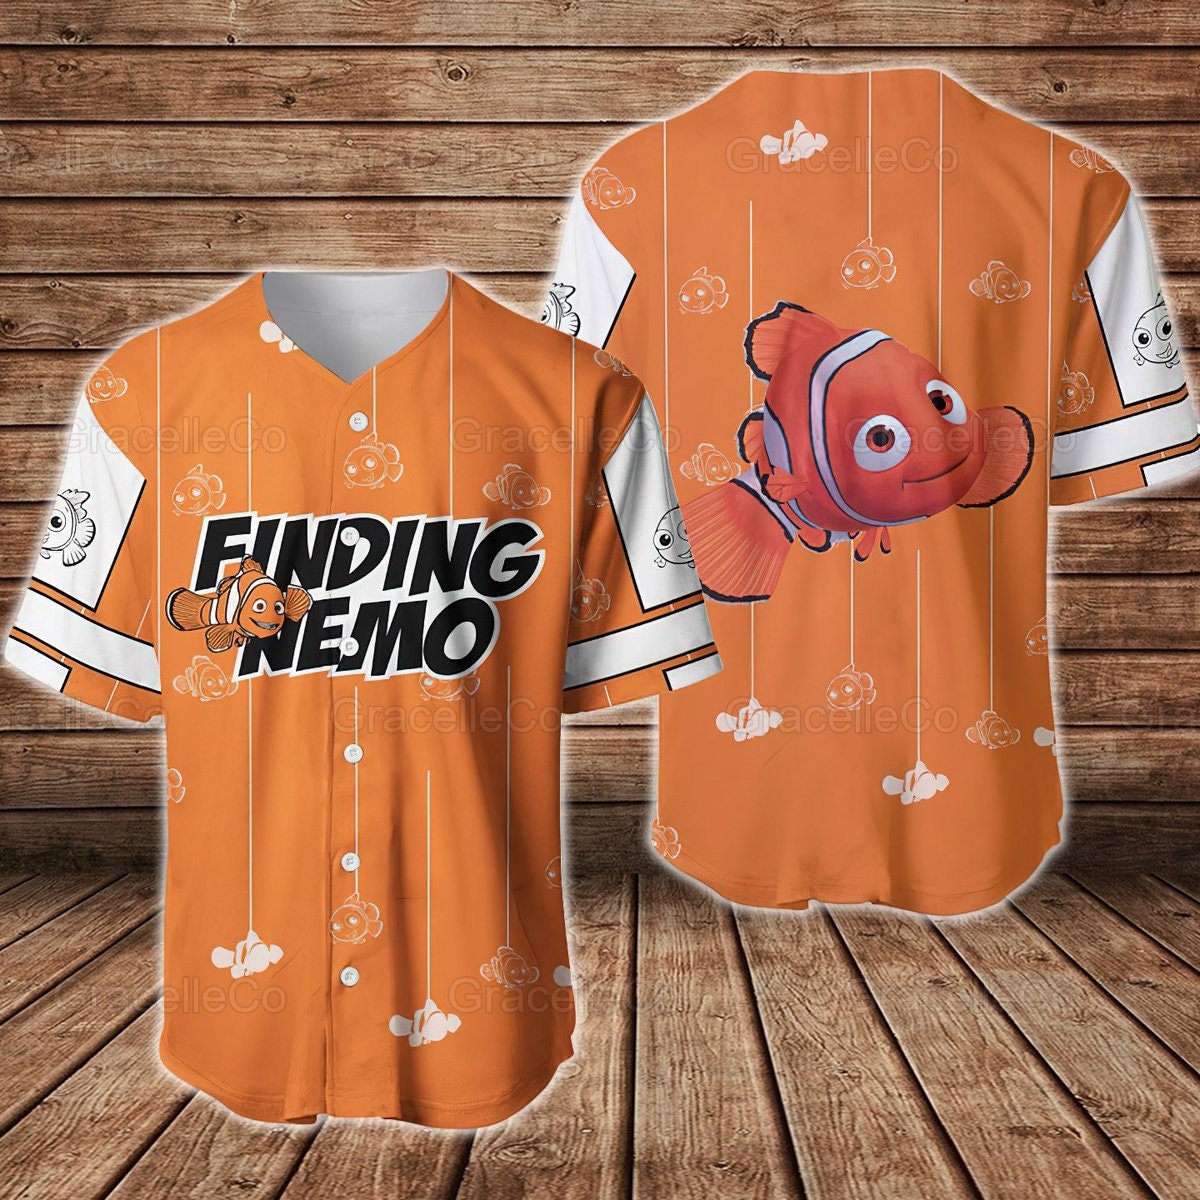 Finding Nemo Baseball Jersey Shirt, Nemo Fish Shirts, Disney Nemo Jersey  Shirts, Nemo Fish Movie Shirt